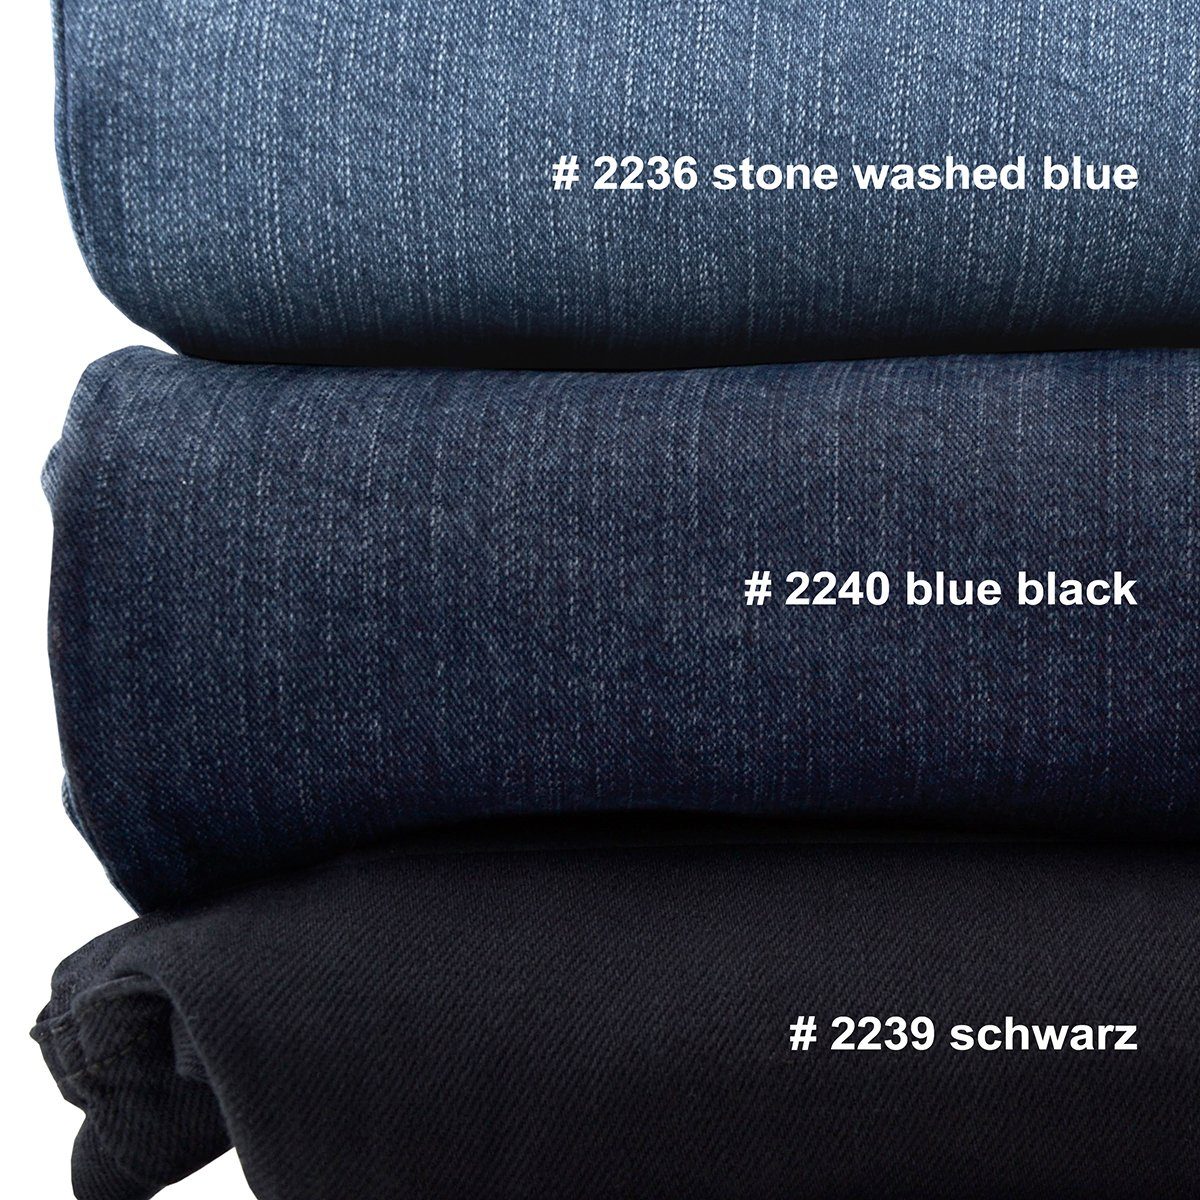 Pionier Stretch-Jeans Übergrößen blue washed Pionier Peter Stretch-Jeans stone